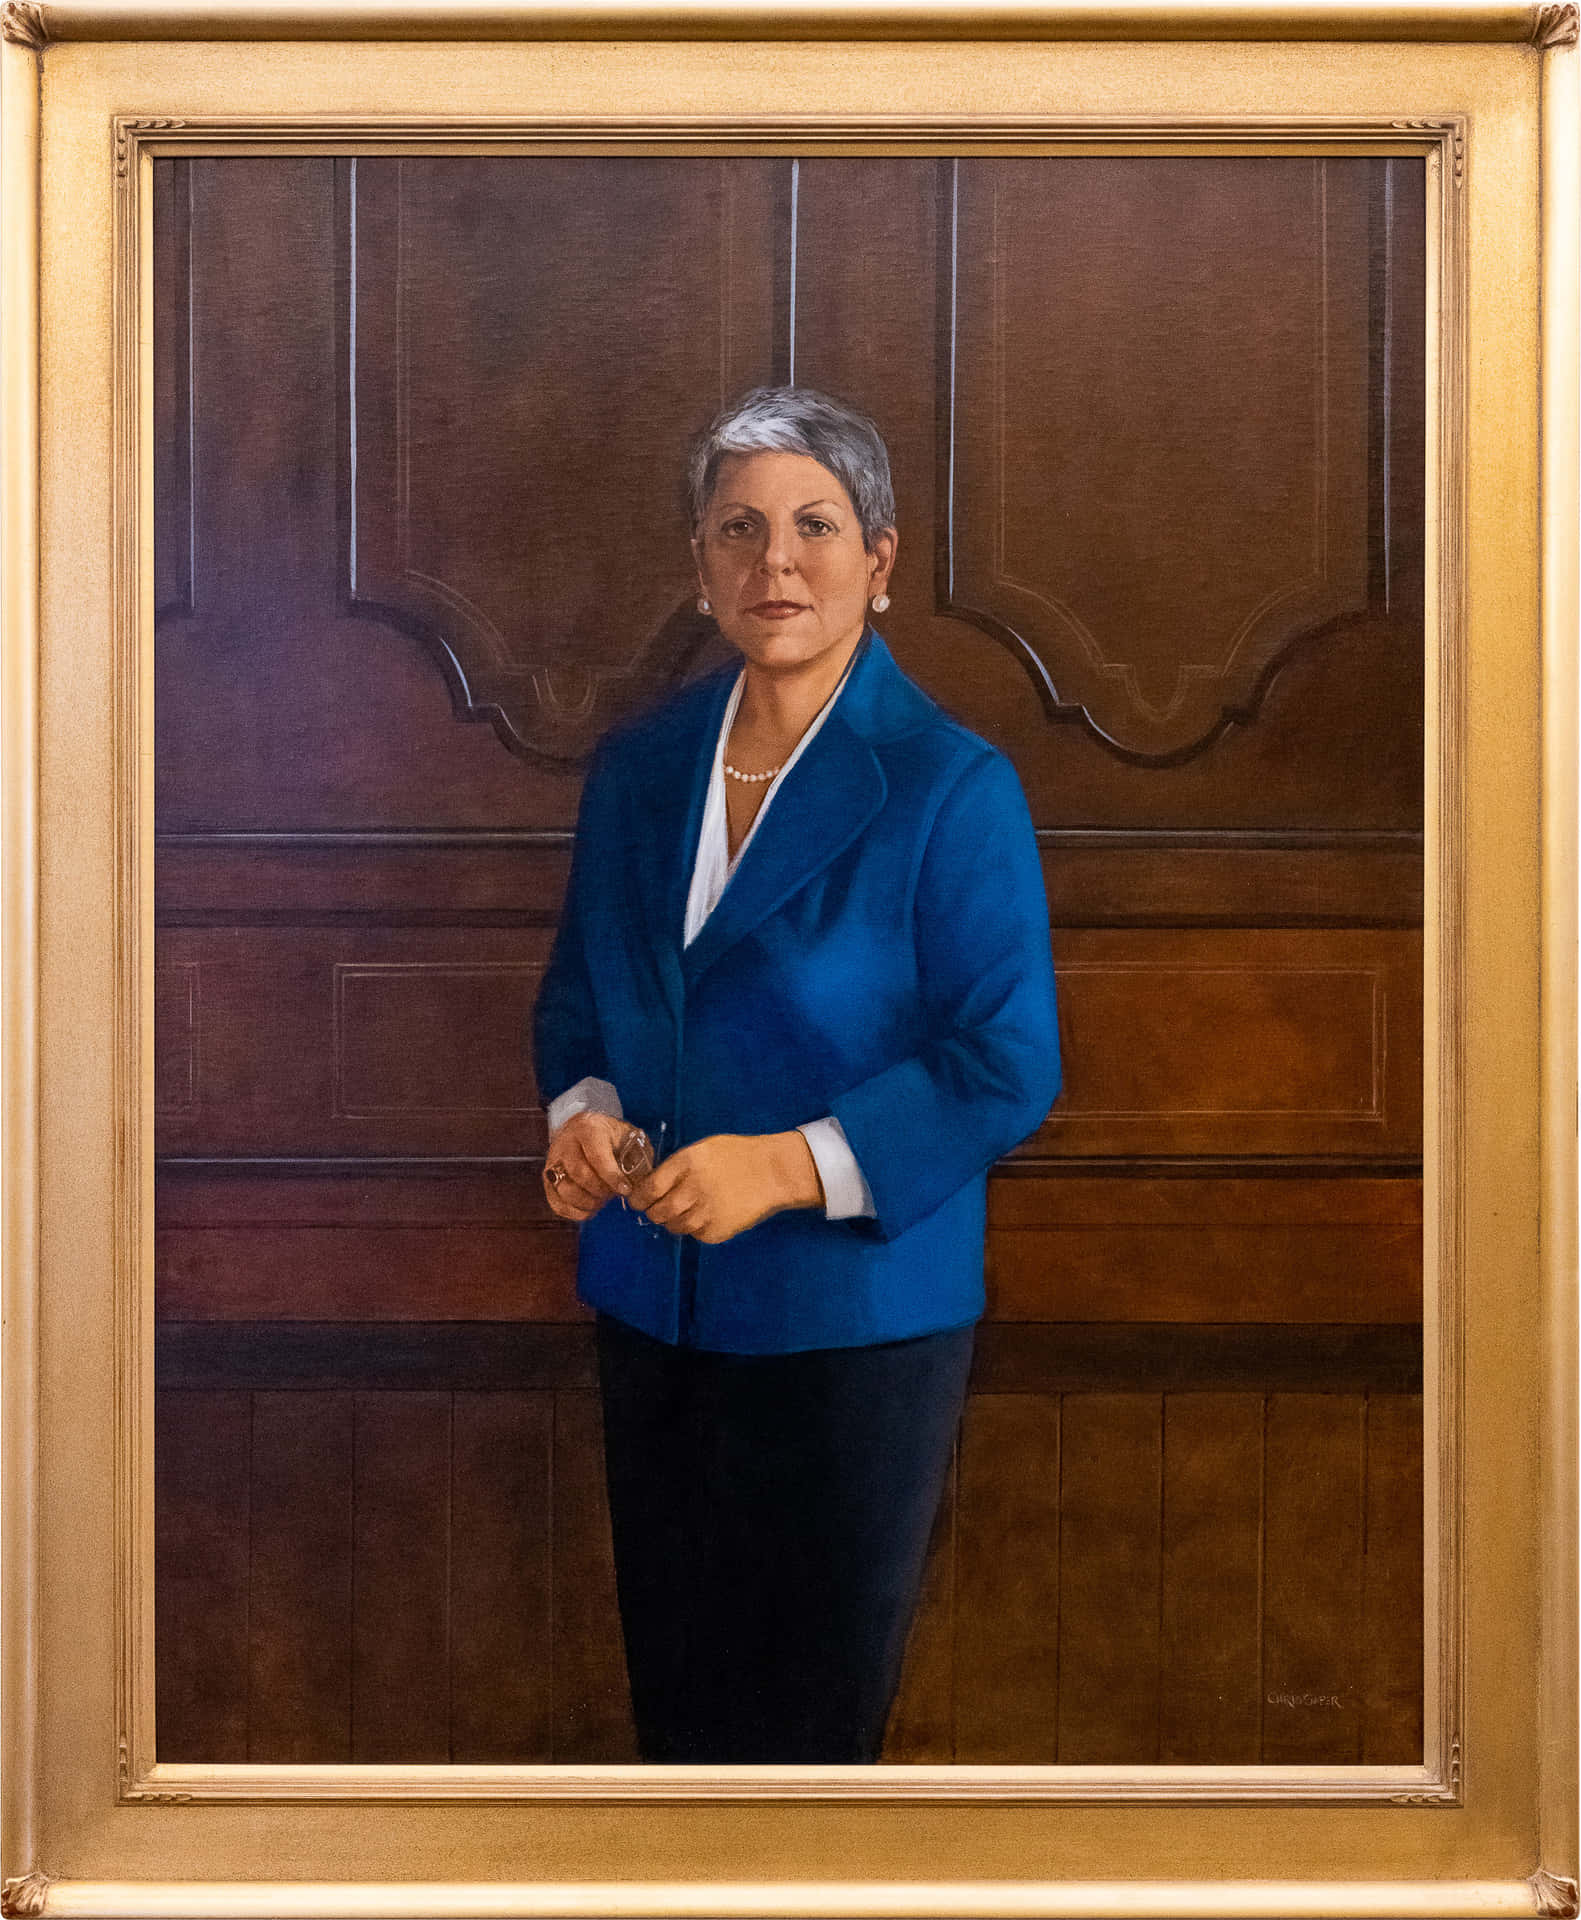 Janet Napolitano Art Portrait Wallpaper